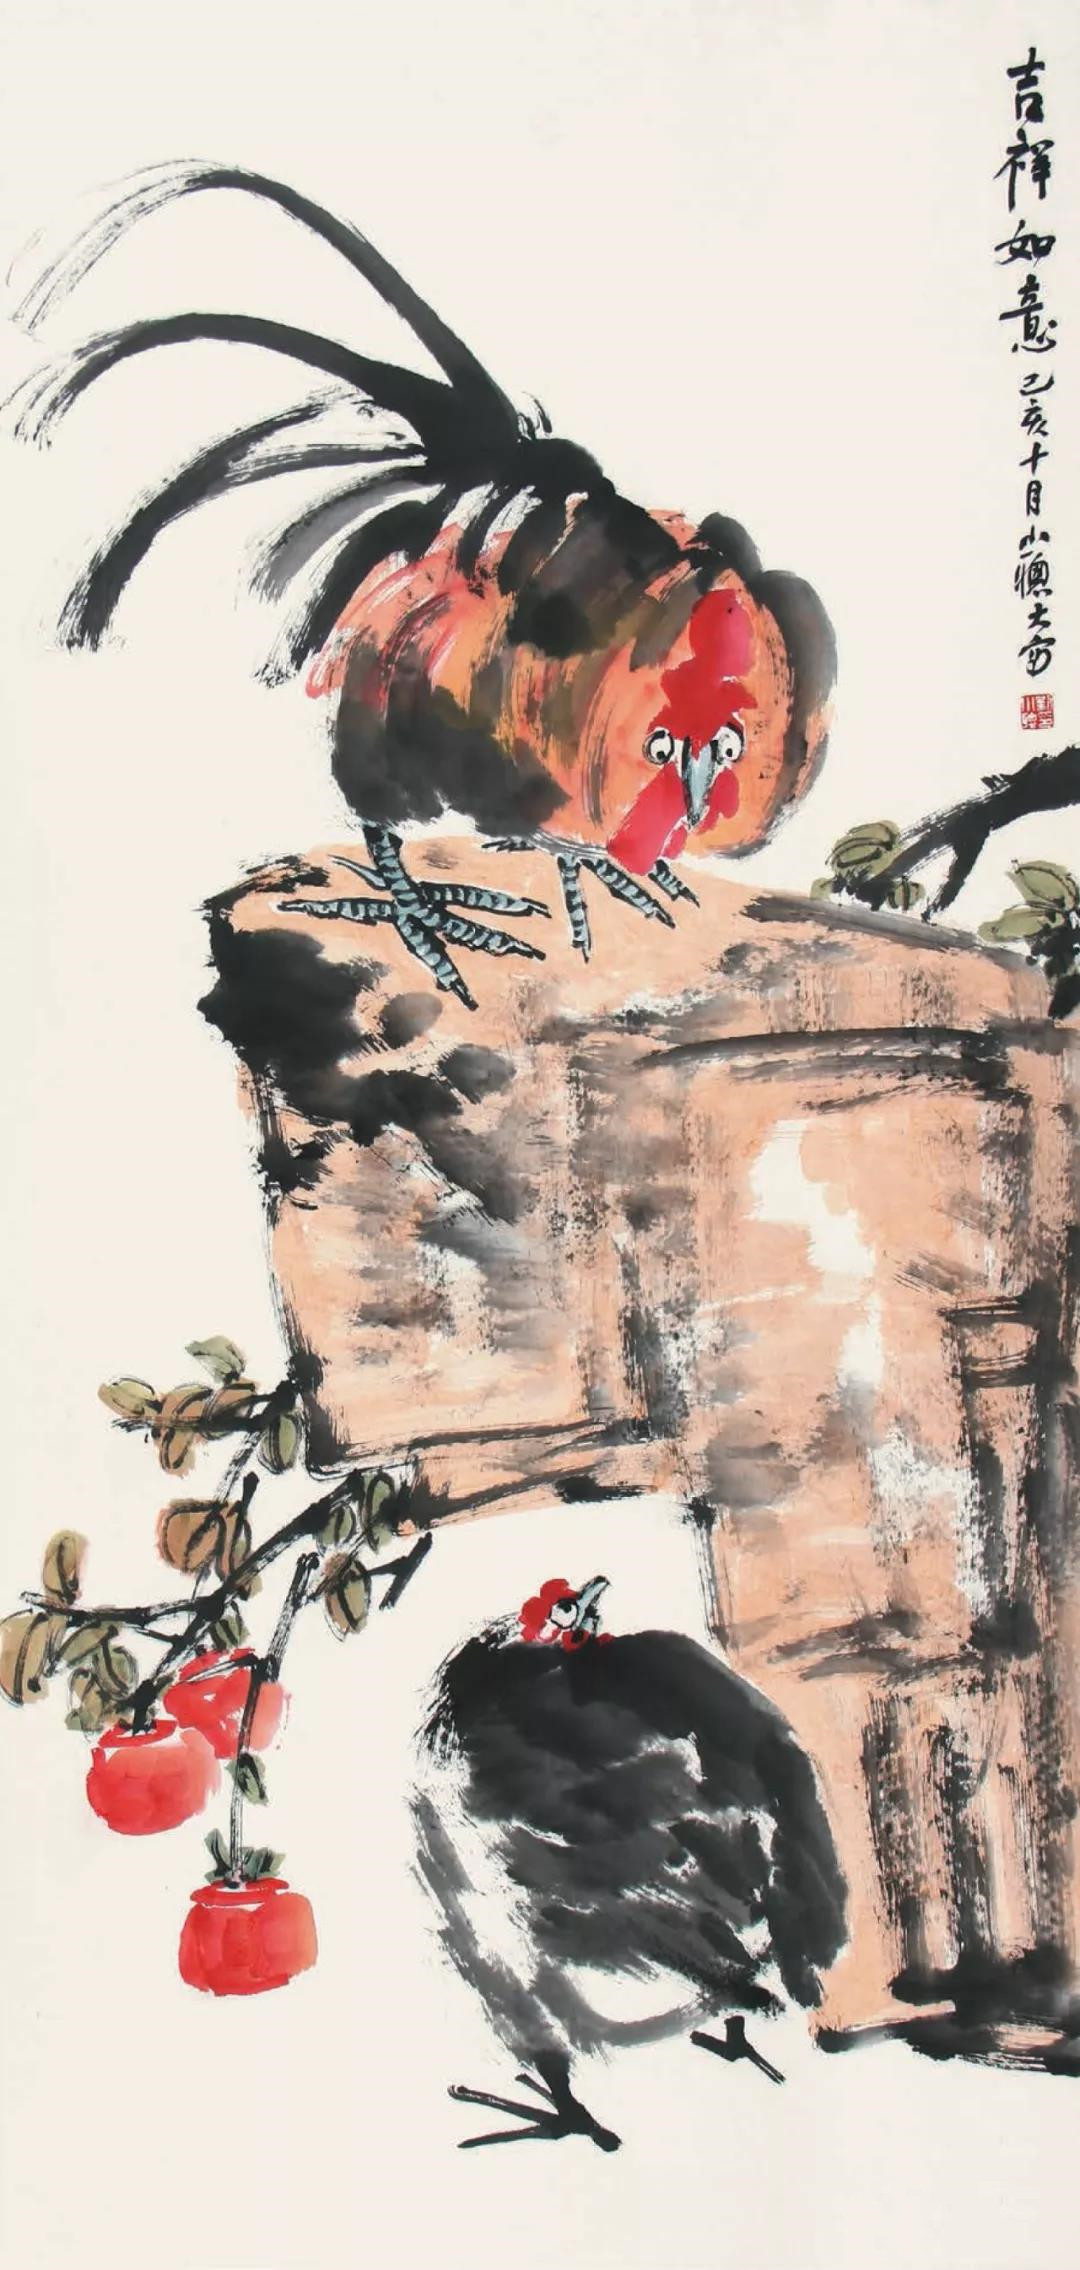 中国国家画院2018届吴悦石师生作品展于12月18日开展